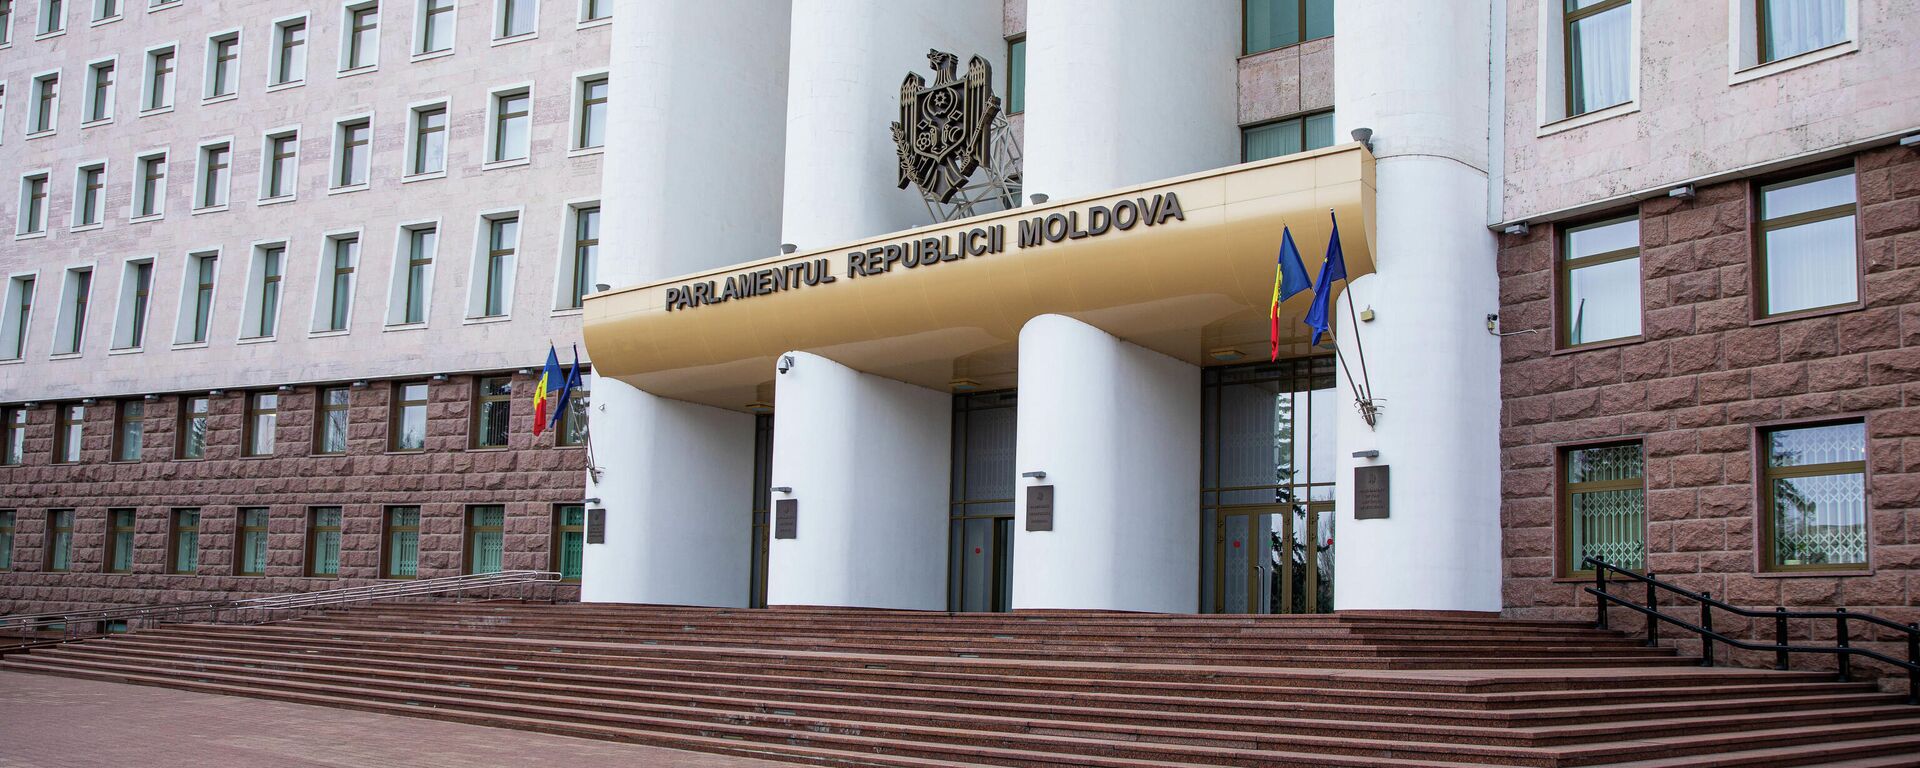 Parlamentul Republicii Moldova - Sputnik Moldova, 1920, 06.12.2021